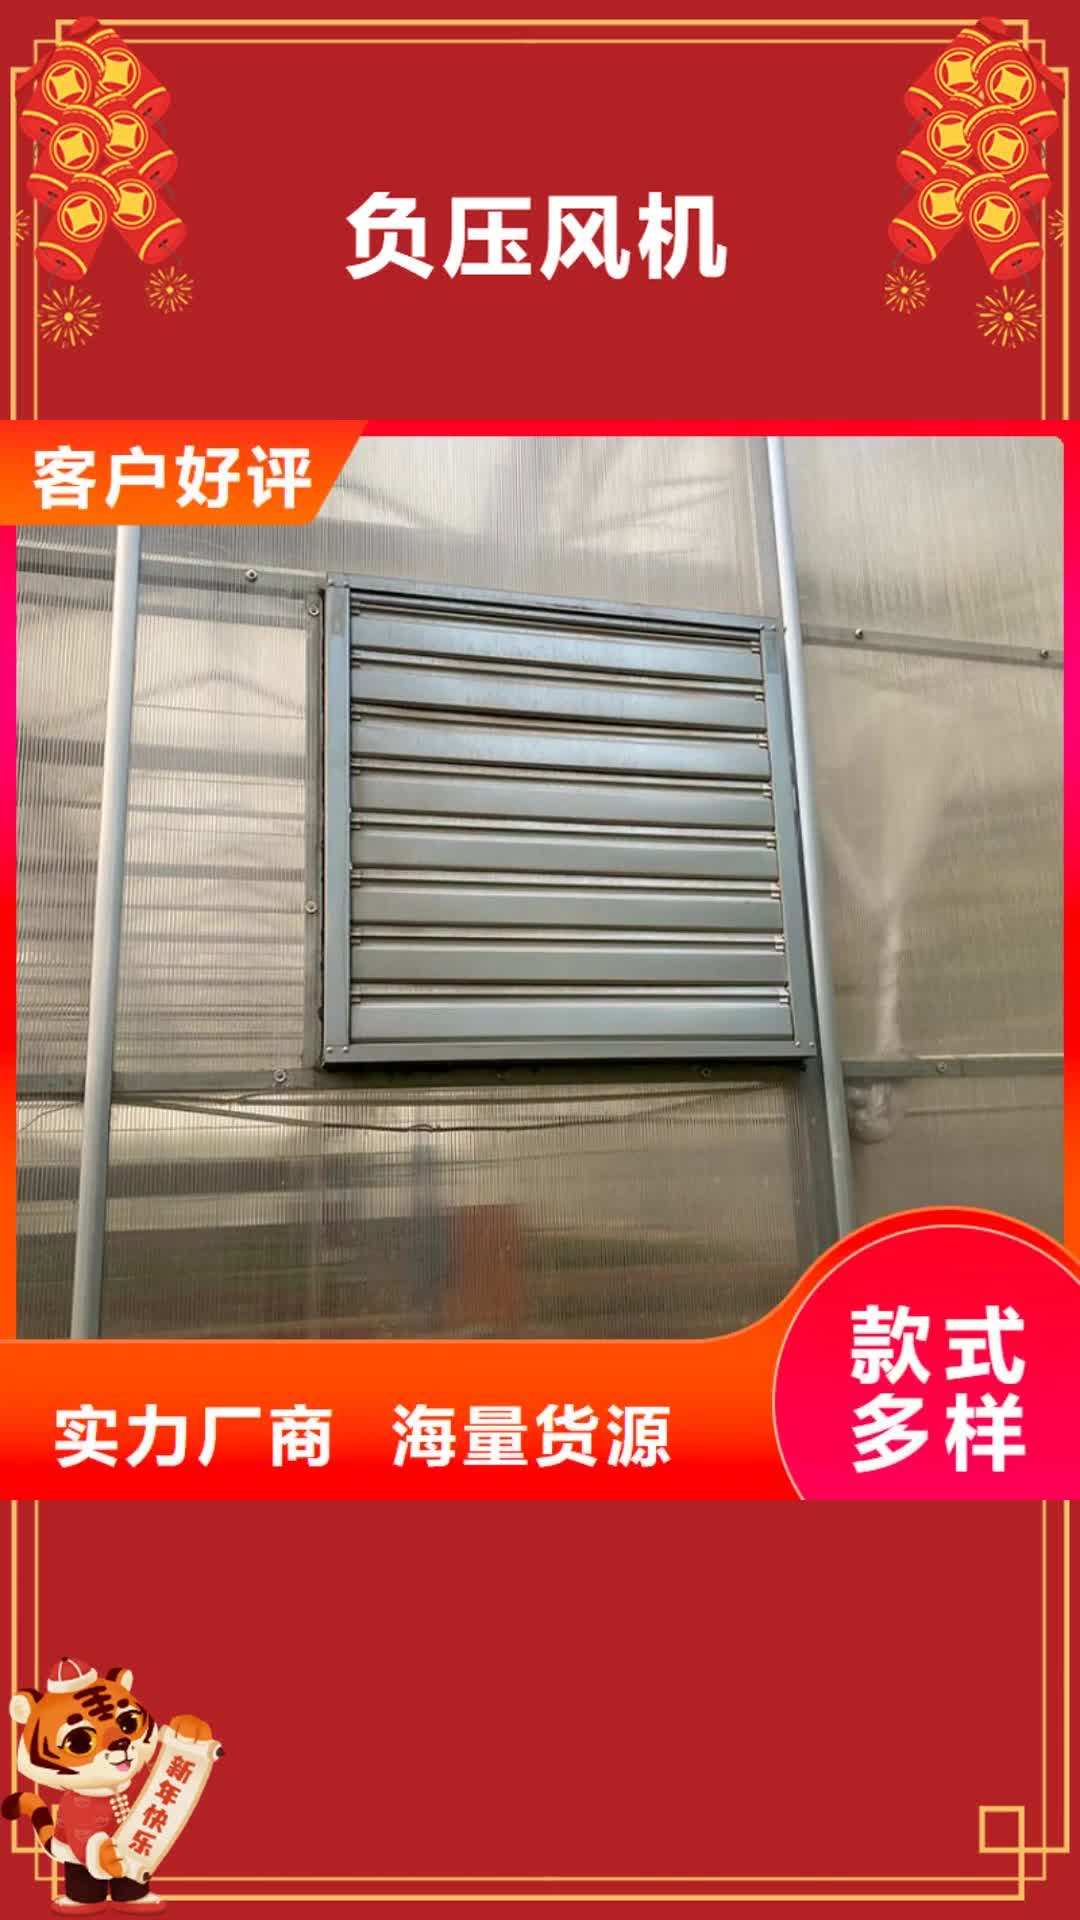 宁波【负压风机】,16j916-1图集住宅楼顶风帽工厂认证